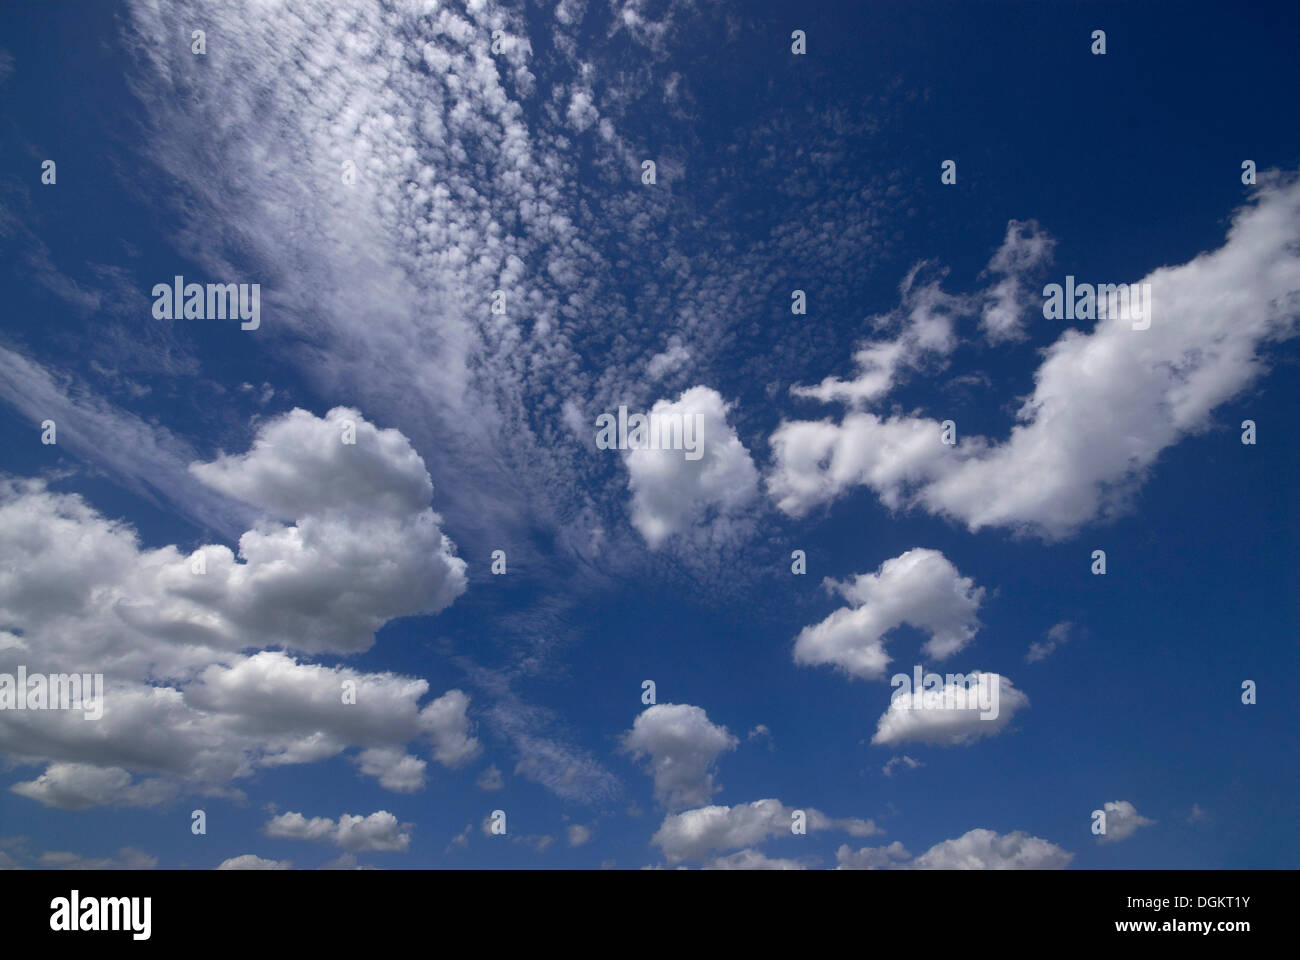 Cirruswolken vor blauem Himmel, Wolken und Cumulus-Wolken Stockfoto